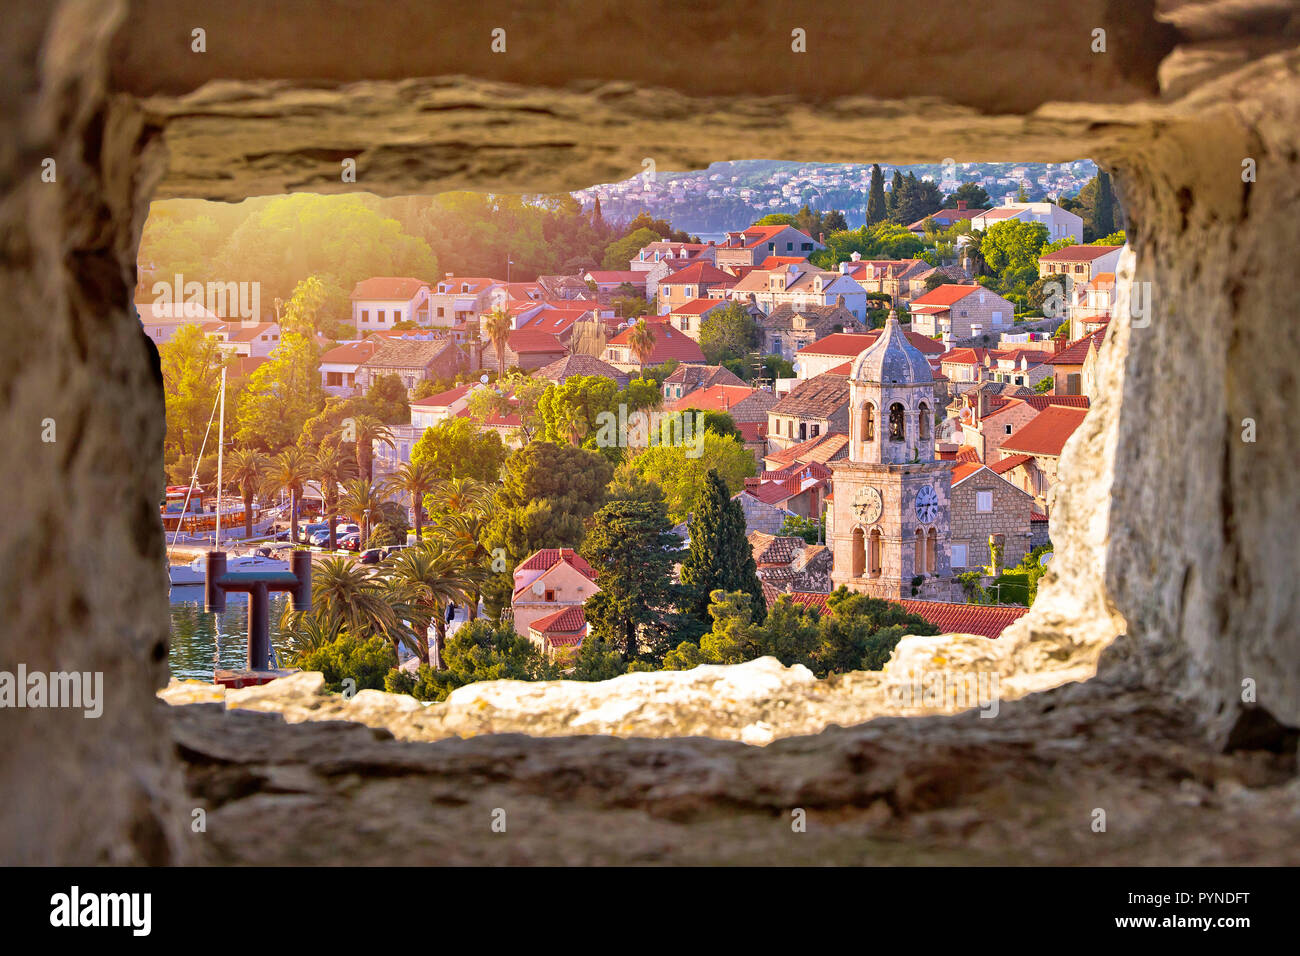 Tours de ville de Cavtat et vue front de mer througf fenêtre en pierre, Dalmatie du Sud, Croatie Banque D'Images